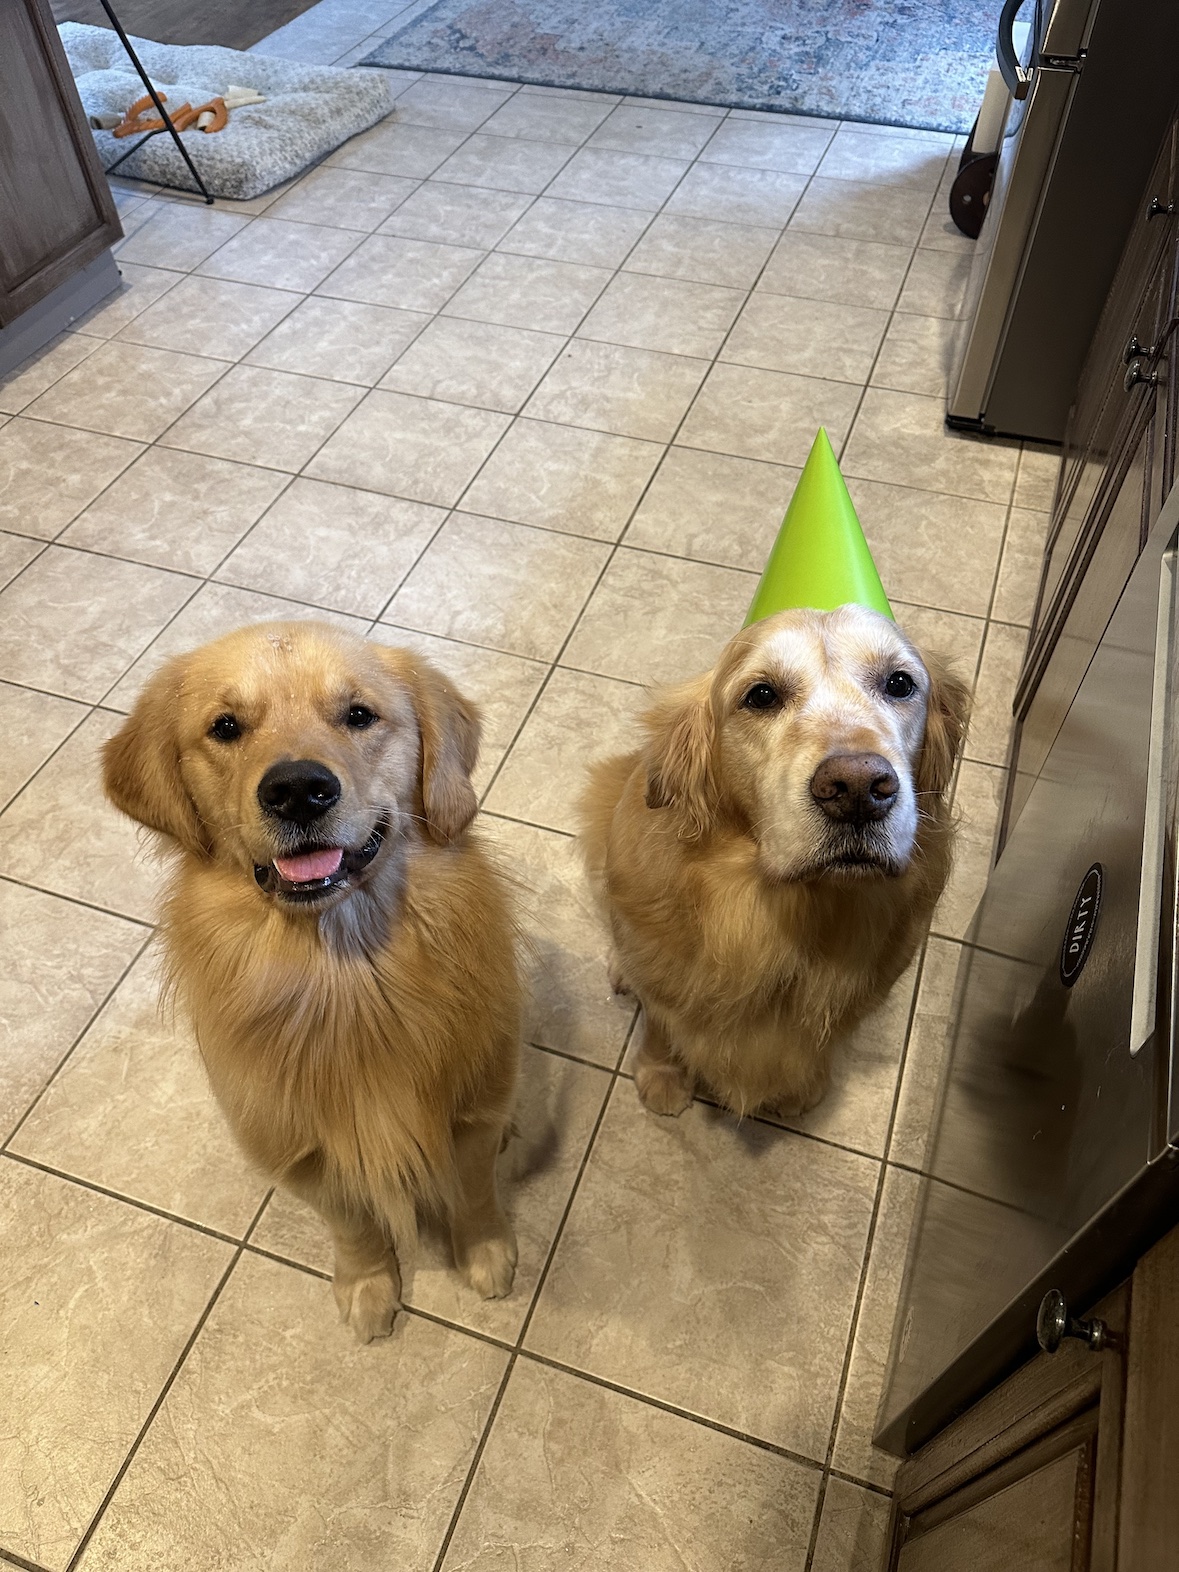 Finn and Arfur on Finn's birthday